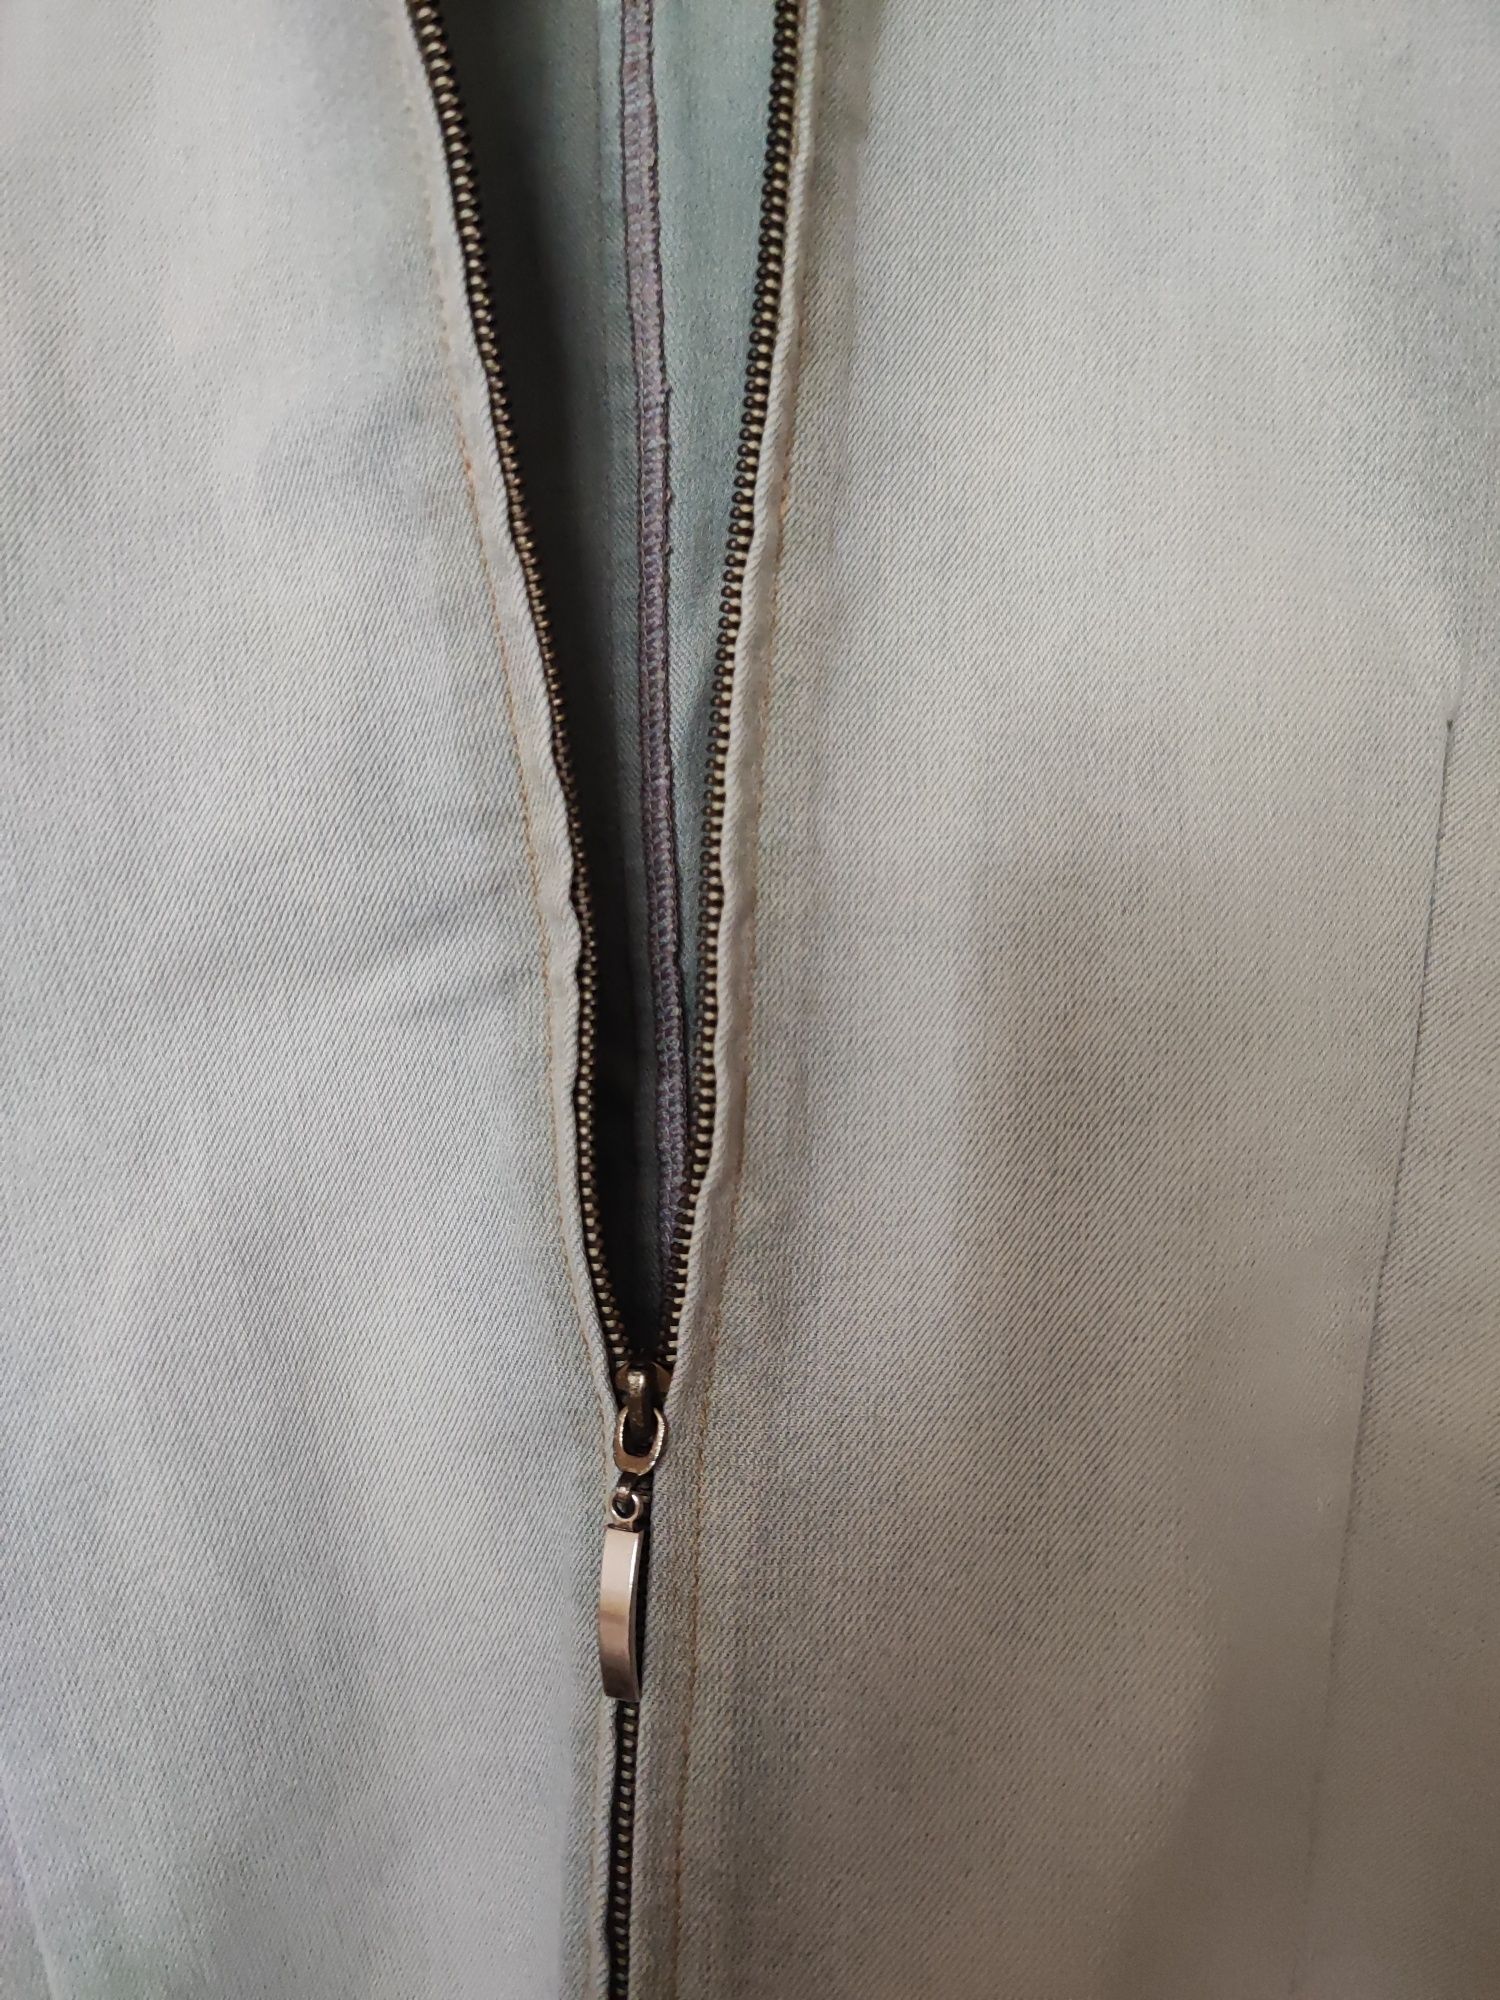 Пиджак курточка  Италия размер 46